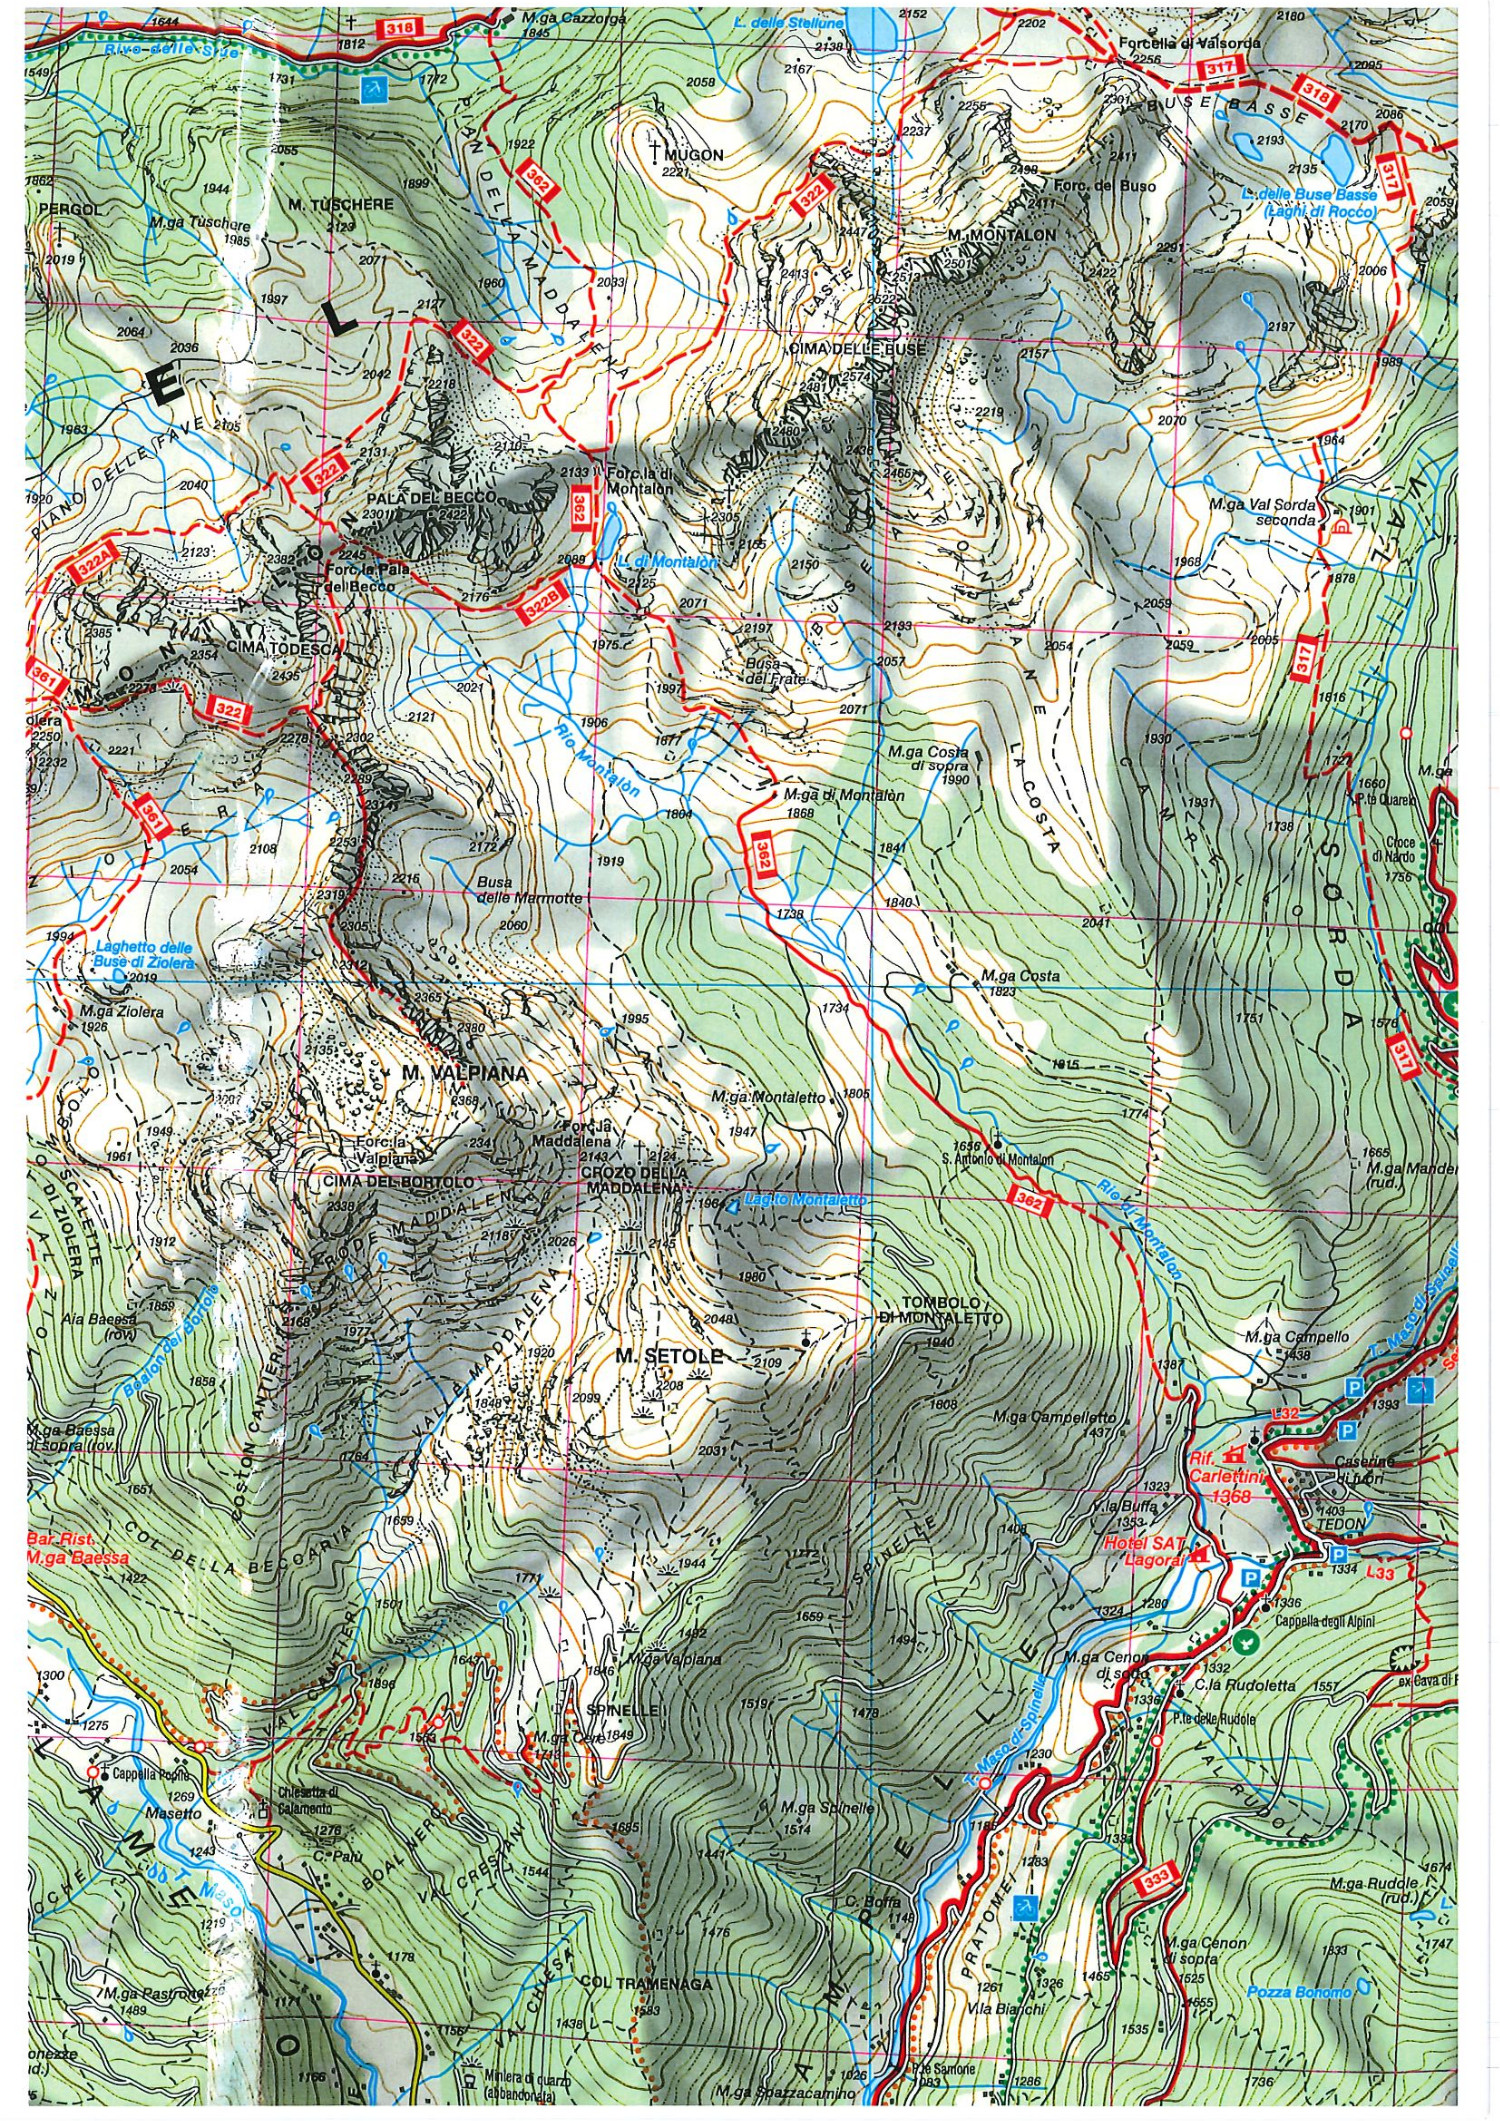 Mappa - Gruppo del magico Lagorai, Malga Cere; Monte Valpiana, Forcella Ziolera